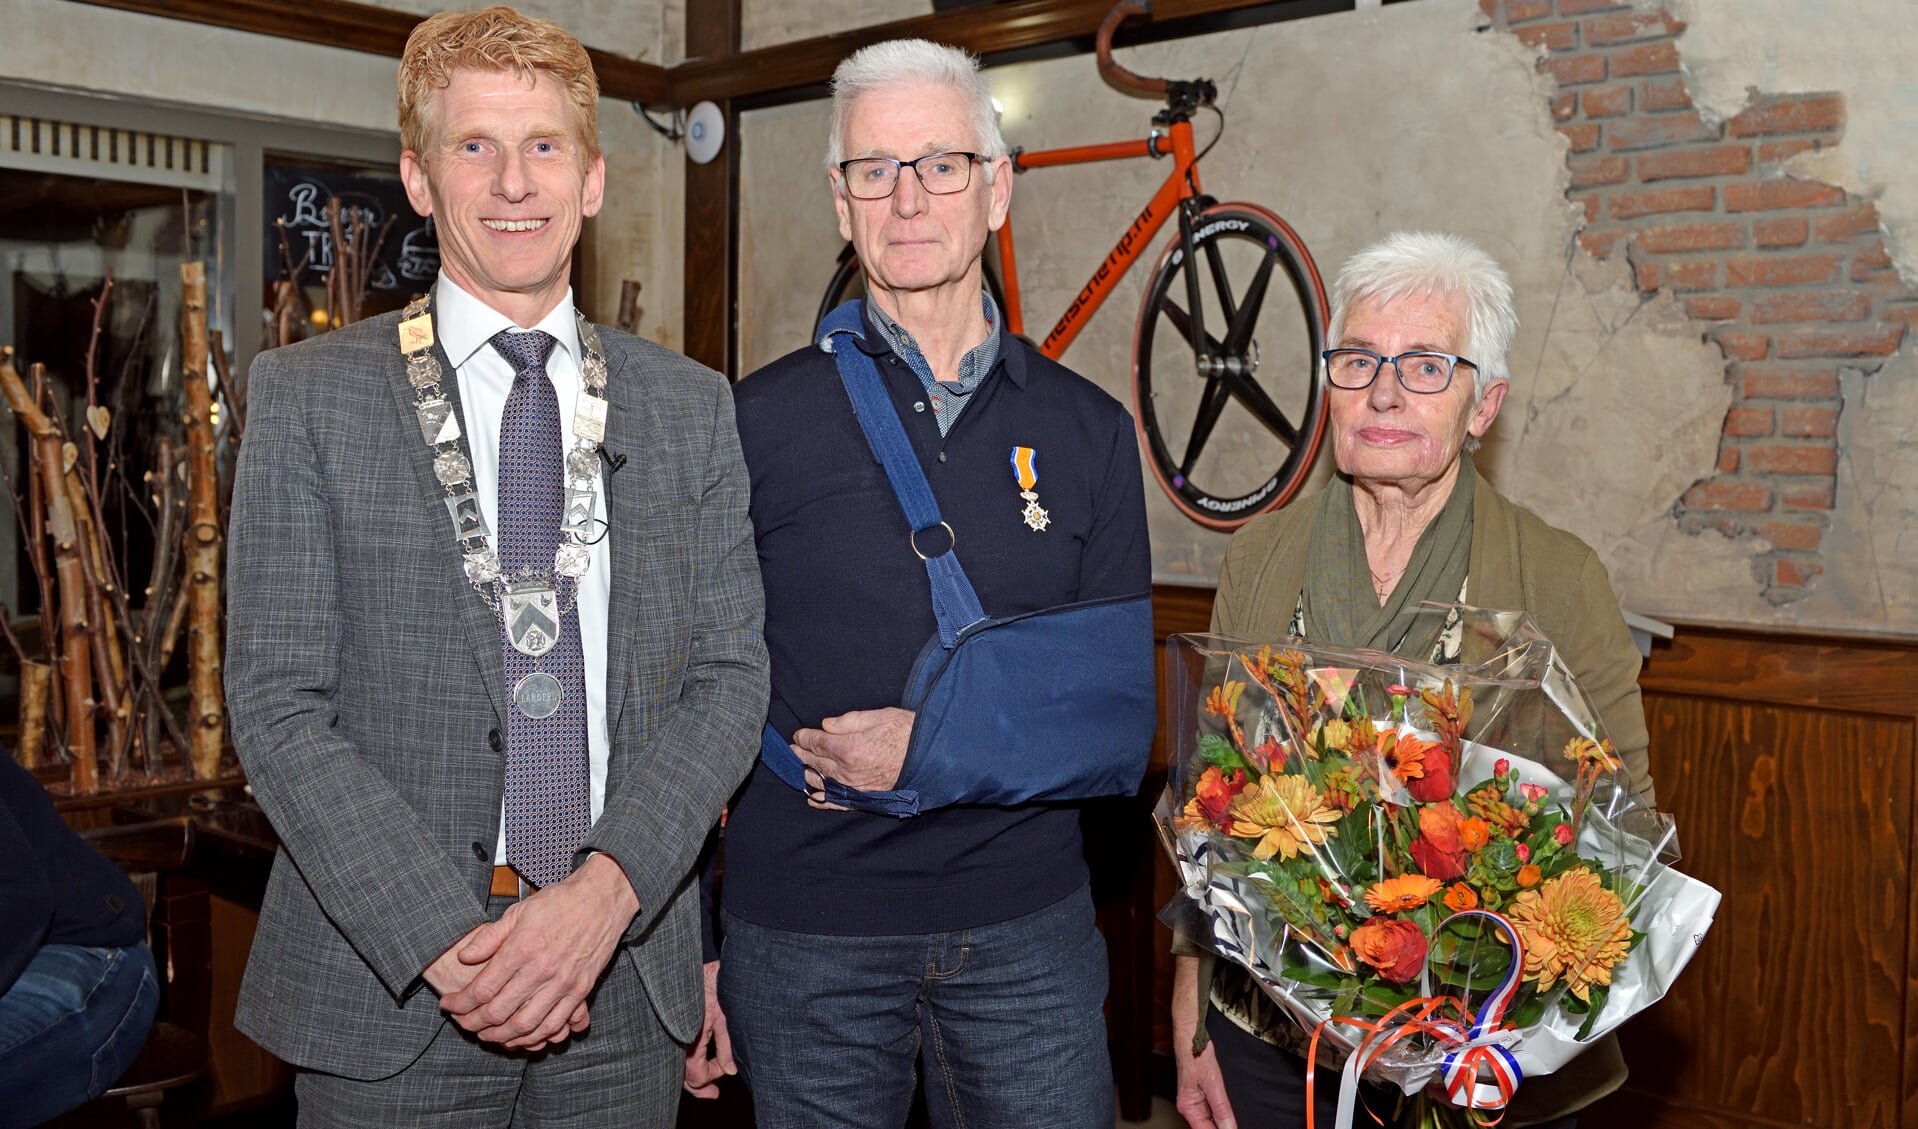 Burgemeester Bakermans, Ton Zegers en zijn vrouw (foto: Landerdfotografie.nl)